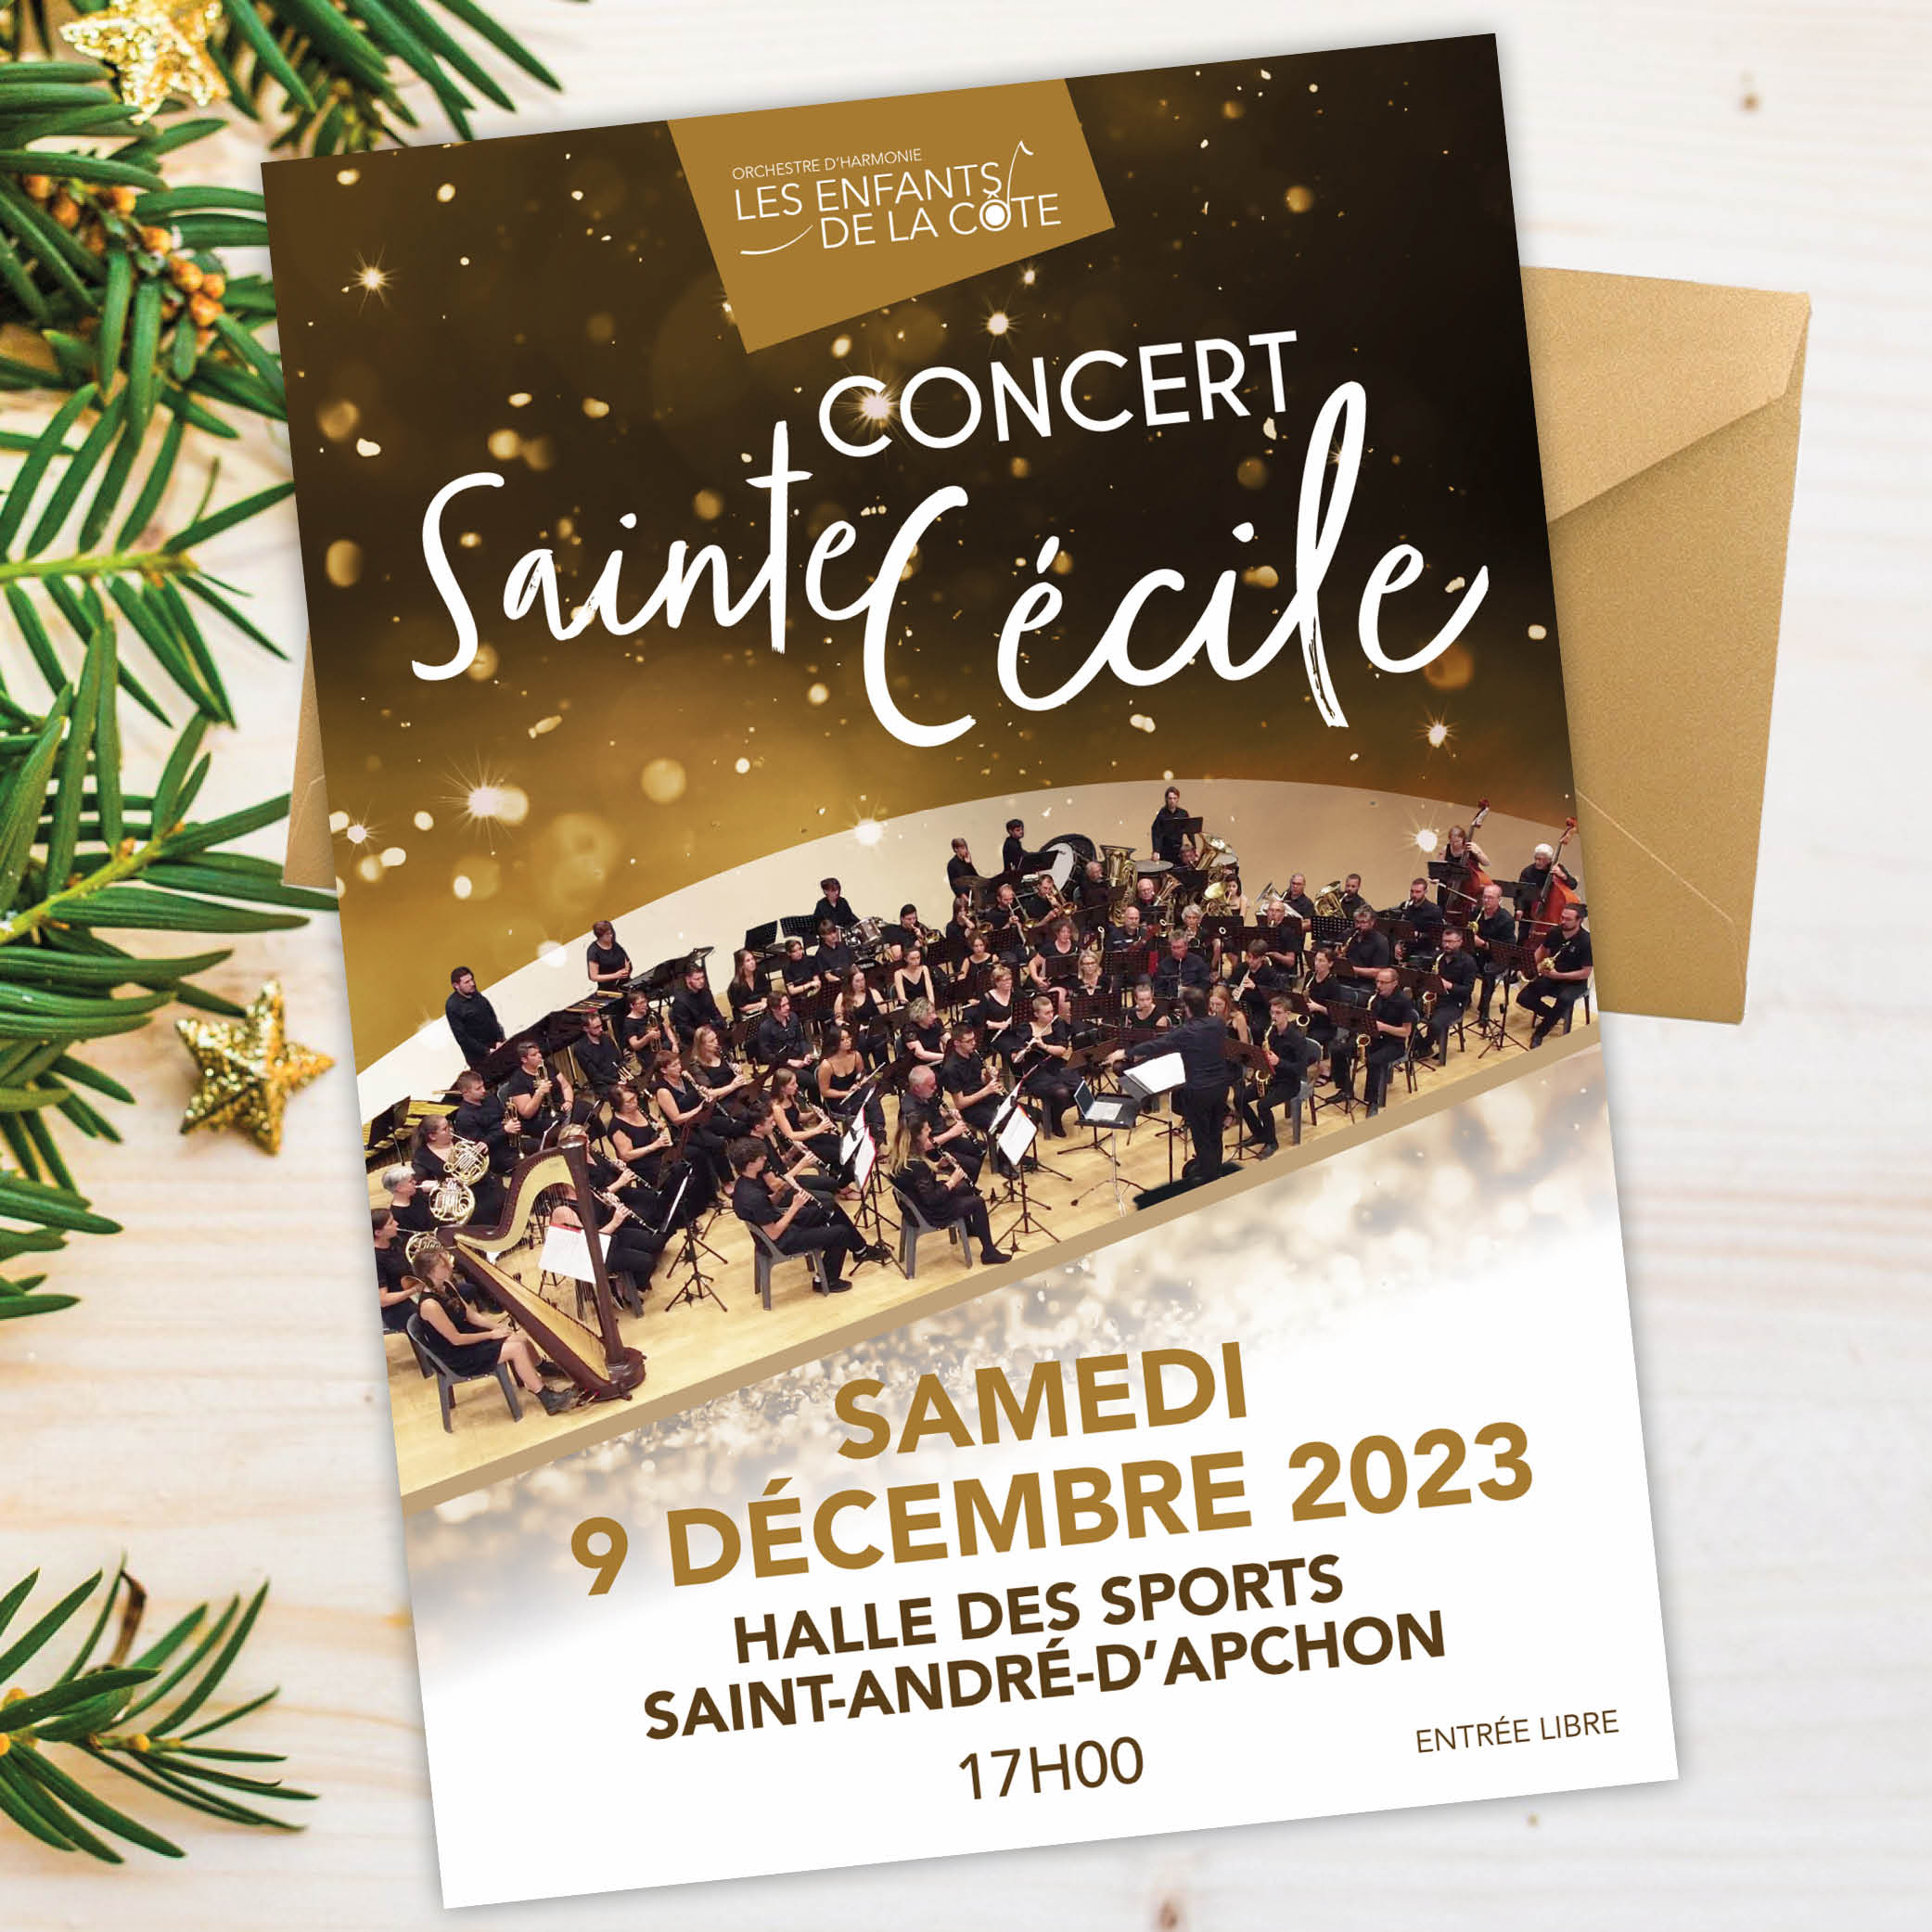 Concert de Sainte-Cécile du 9 décembre 2023